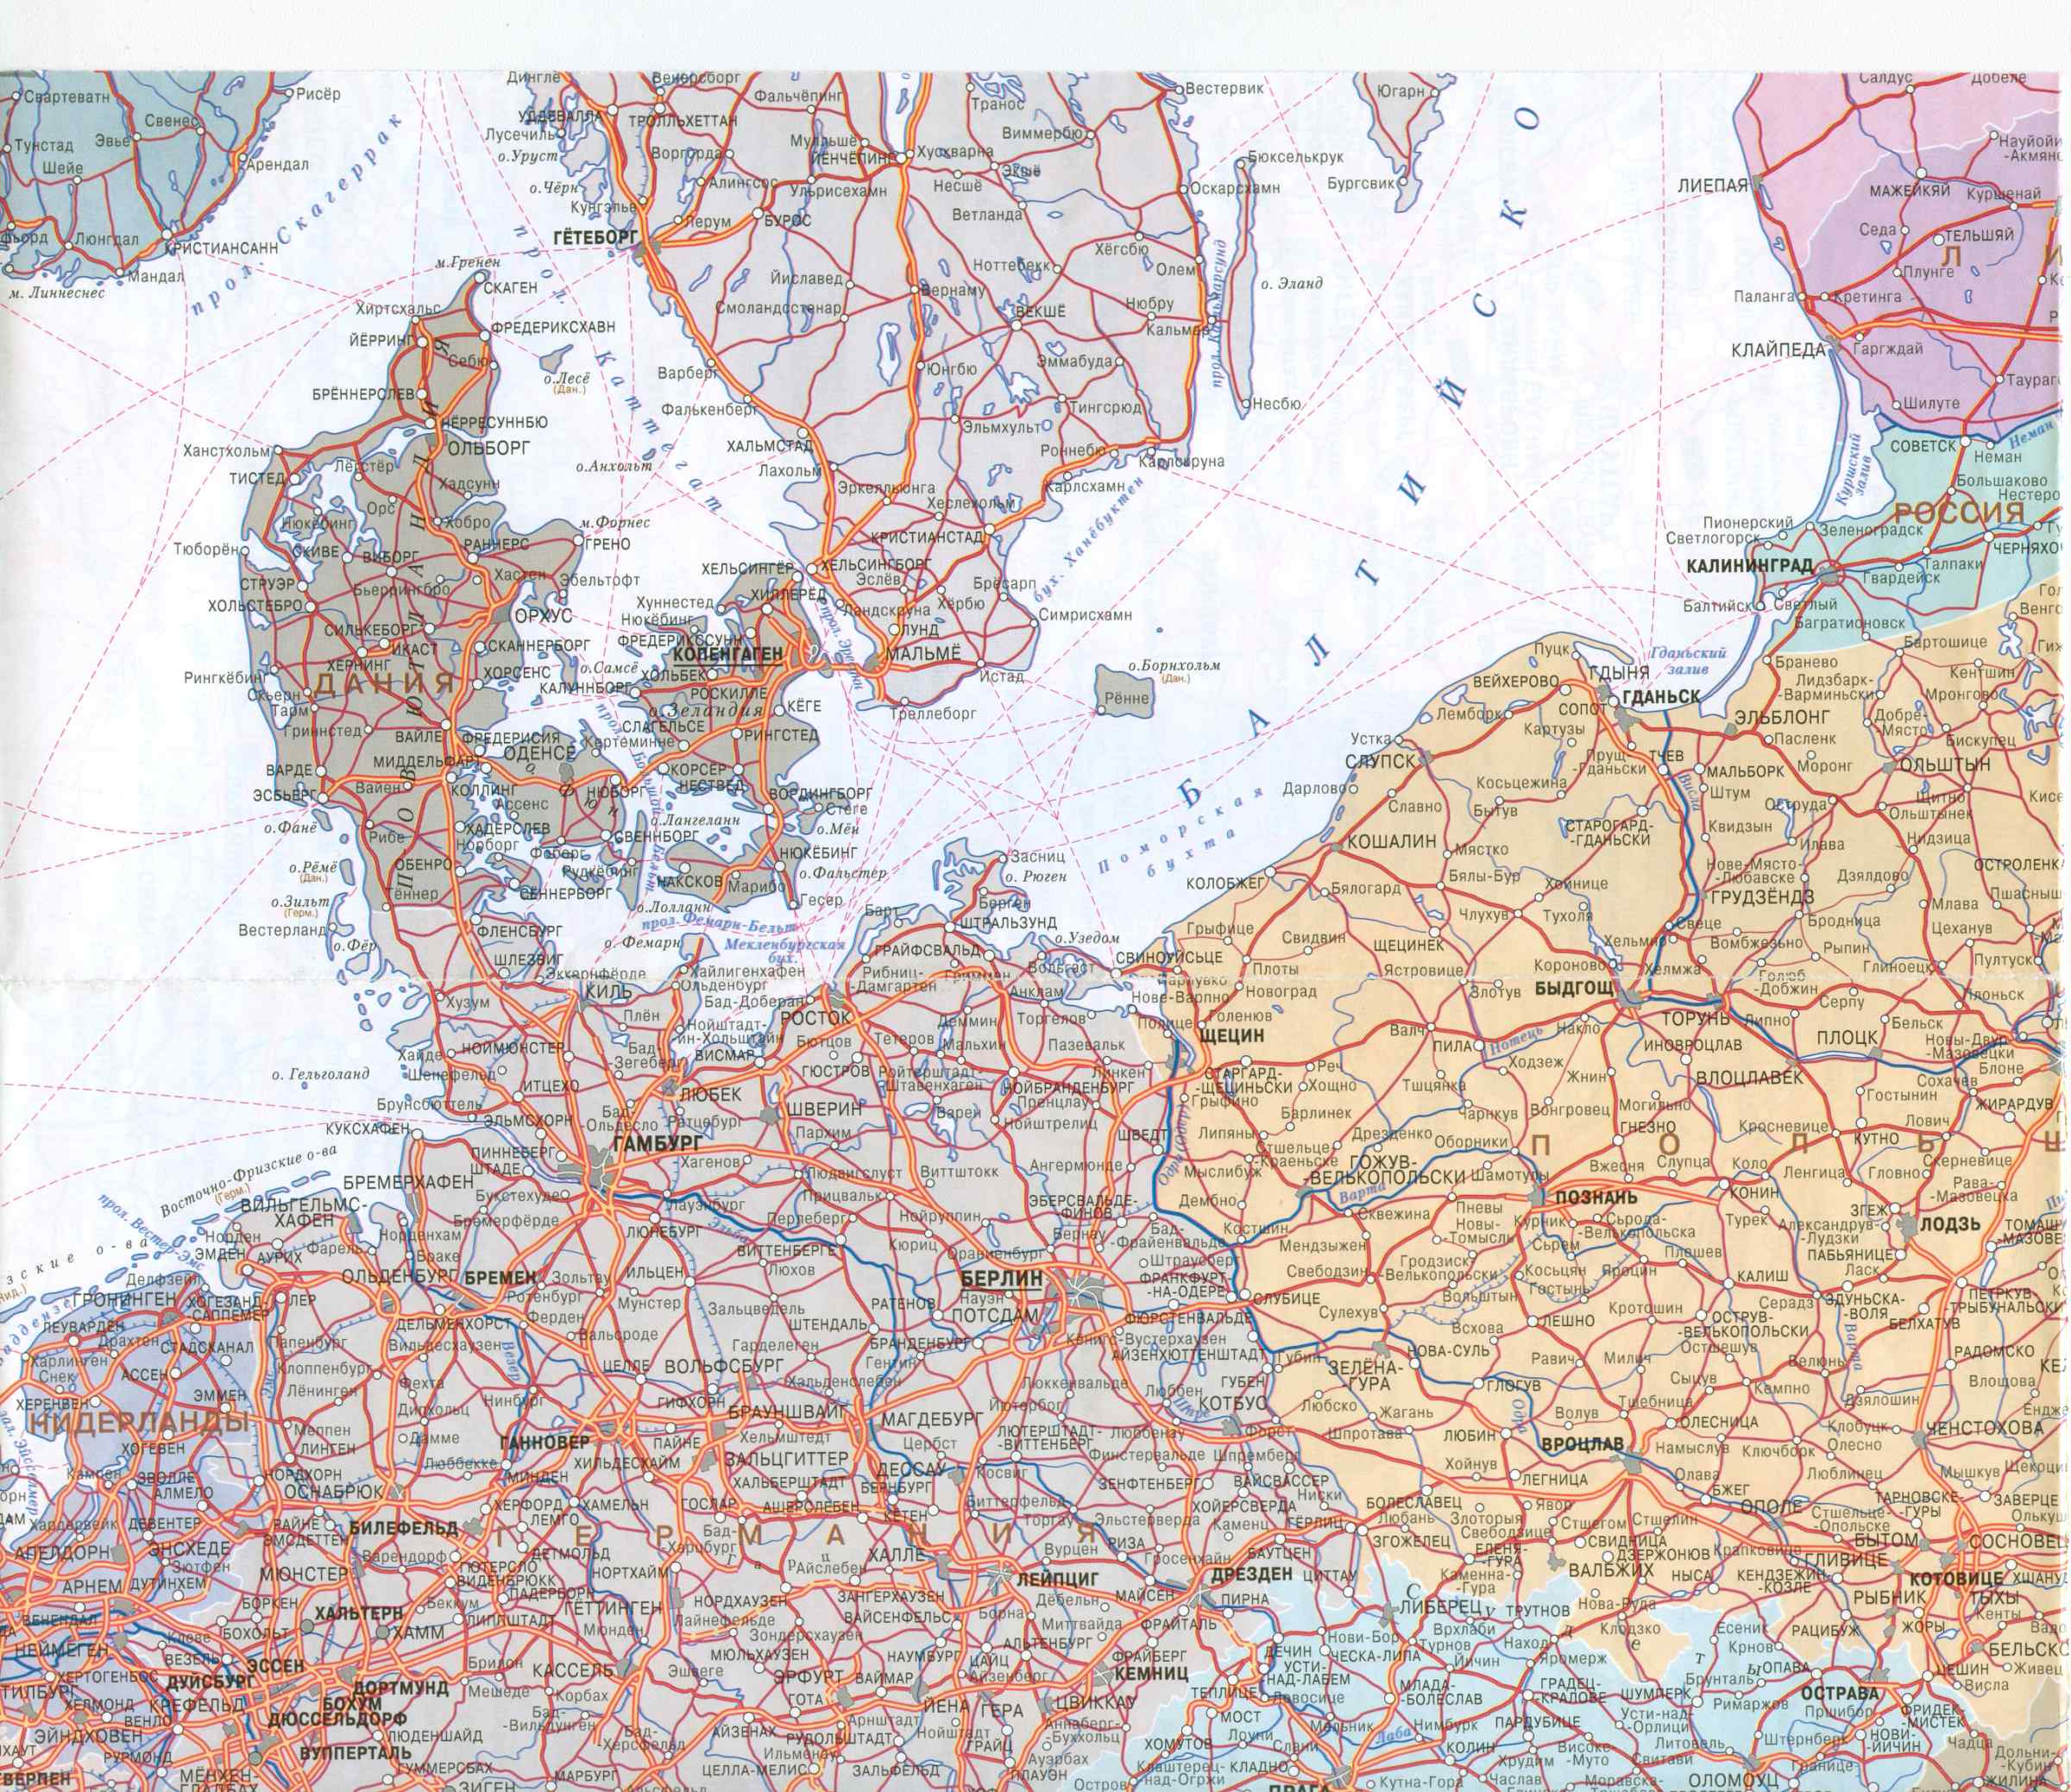  Карта автодорог Европы 1см:45км. Большая подробная карта автодорог Европы на русском языке, B2 - 